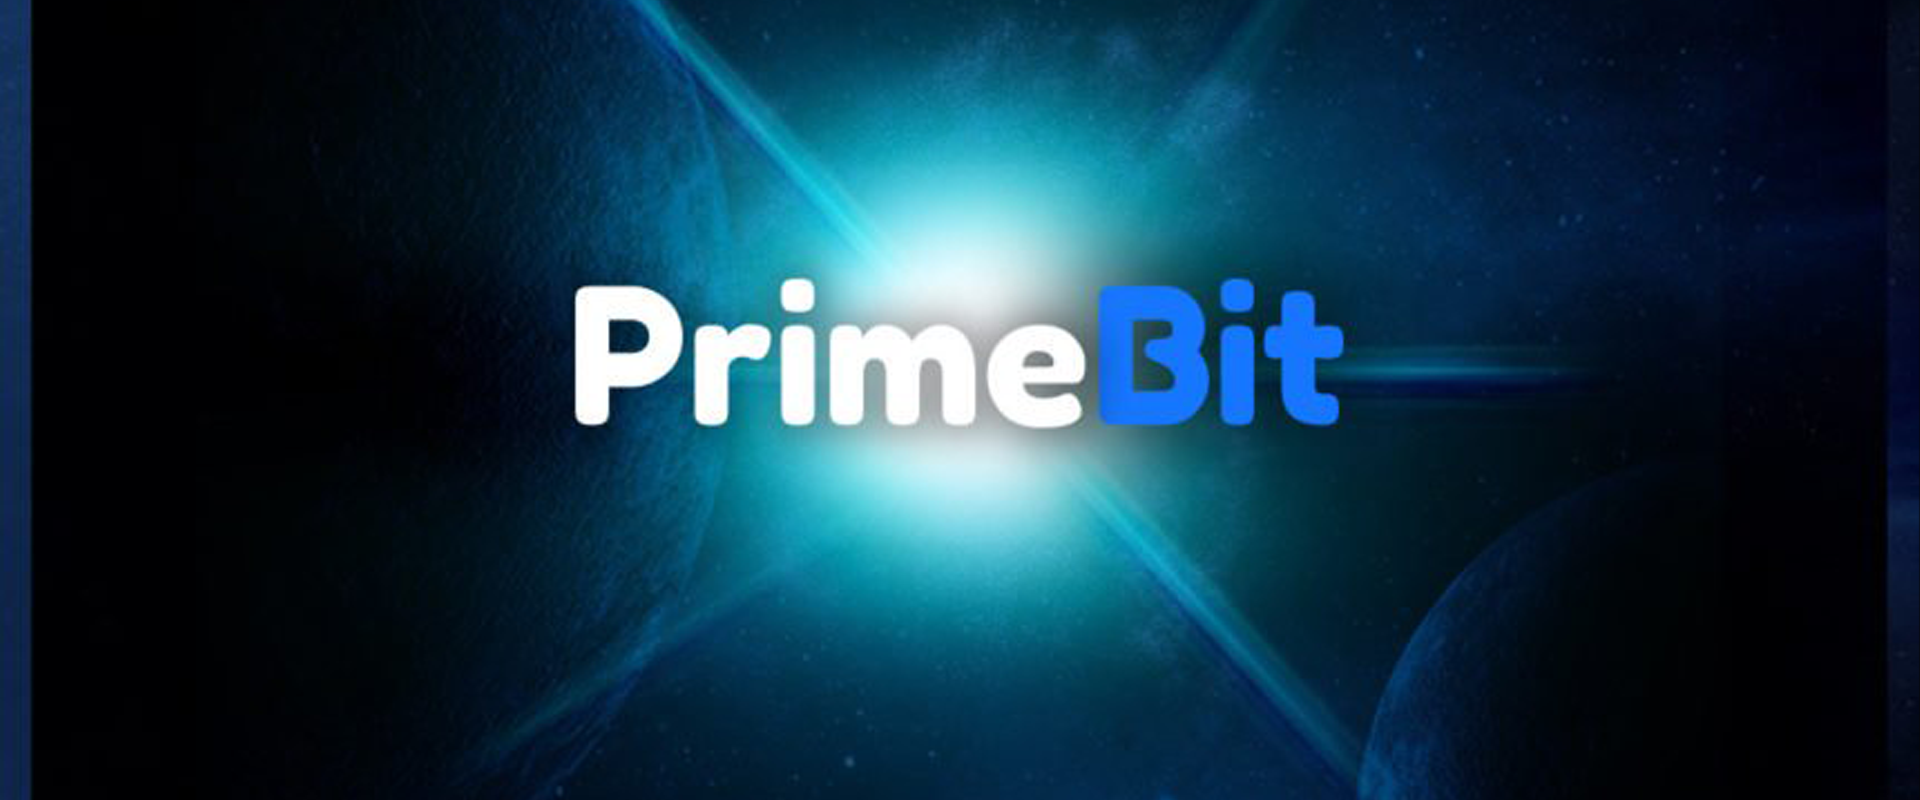 PrimeBit là một sàn giao dịch đến từ Saint Vincent và Grenadines